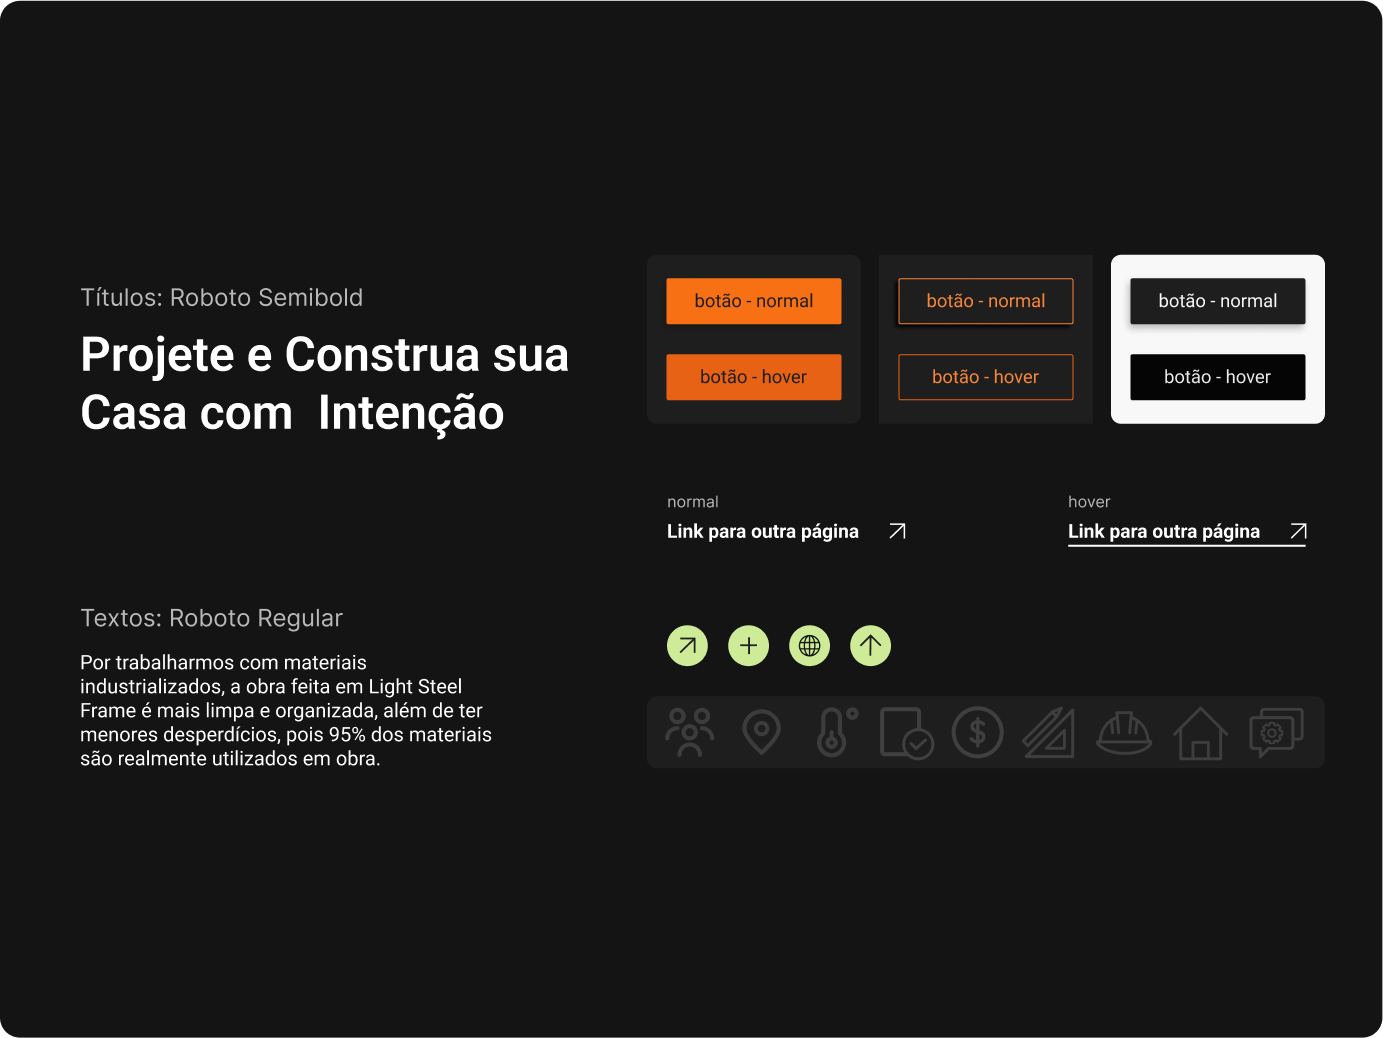 Imagem mostra o guia de estilo do site, com estilo de botões, links, ícones e fontes dos textos.